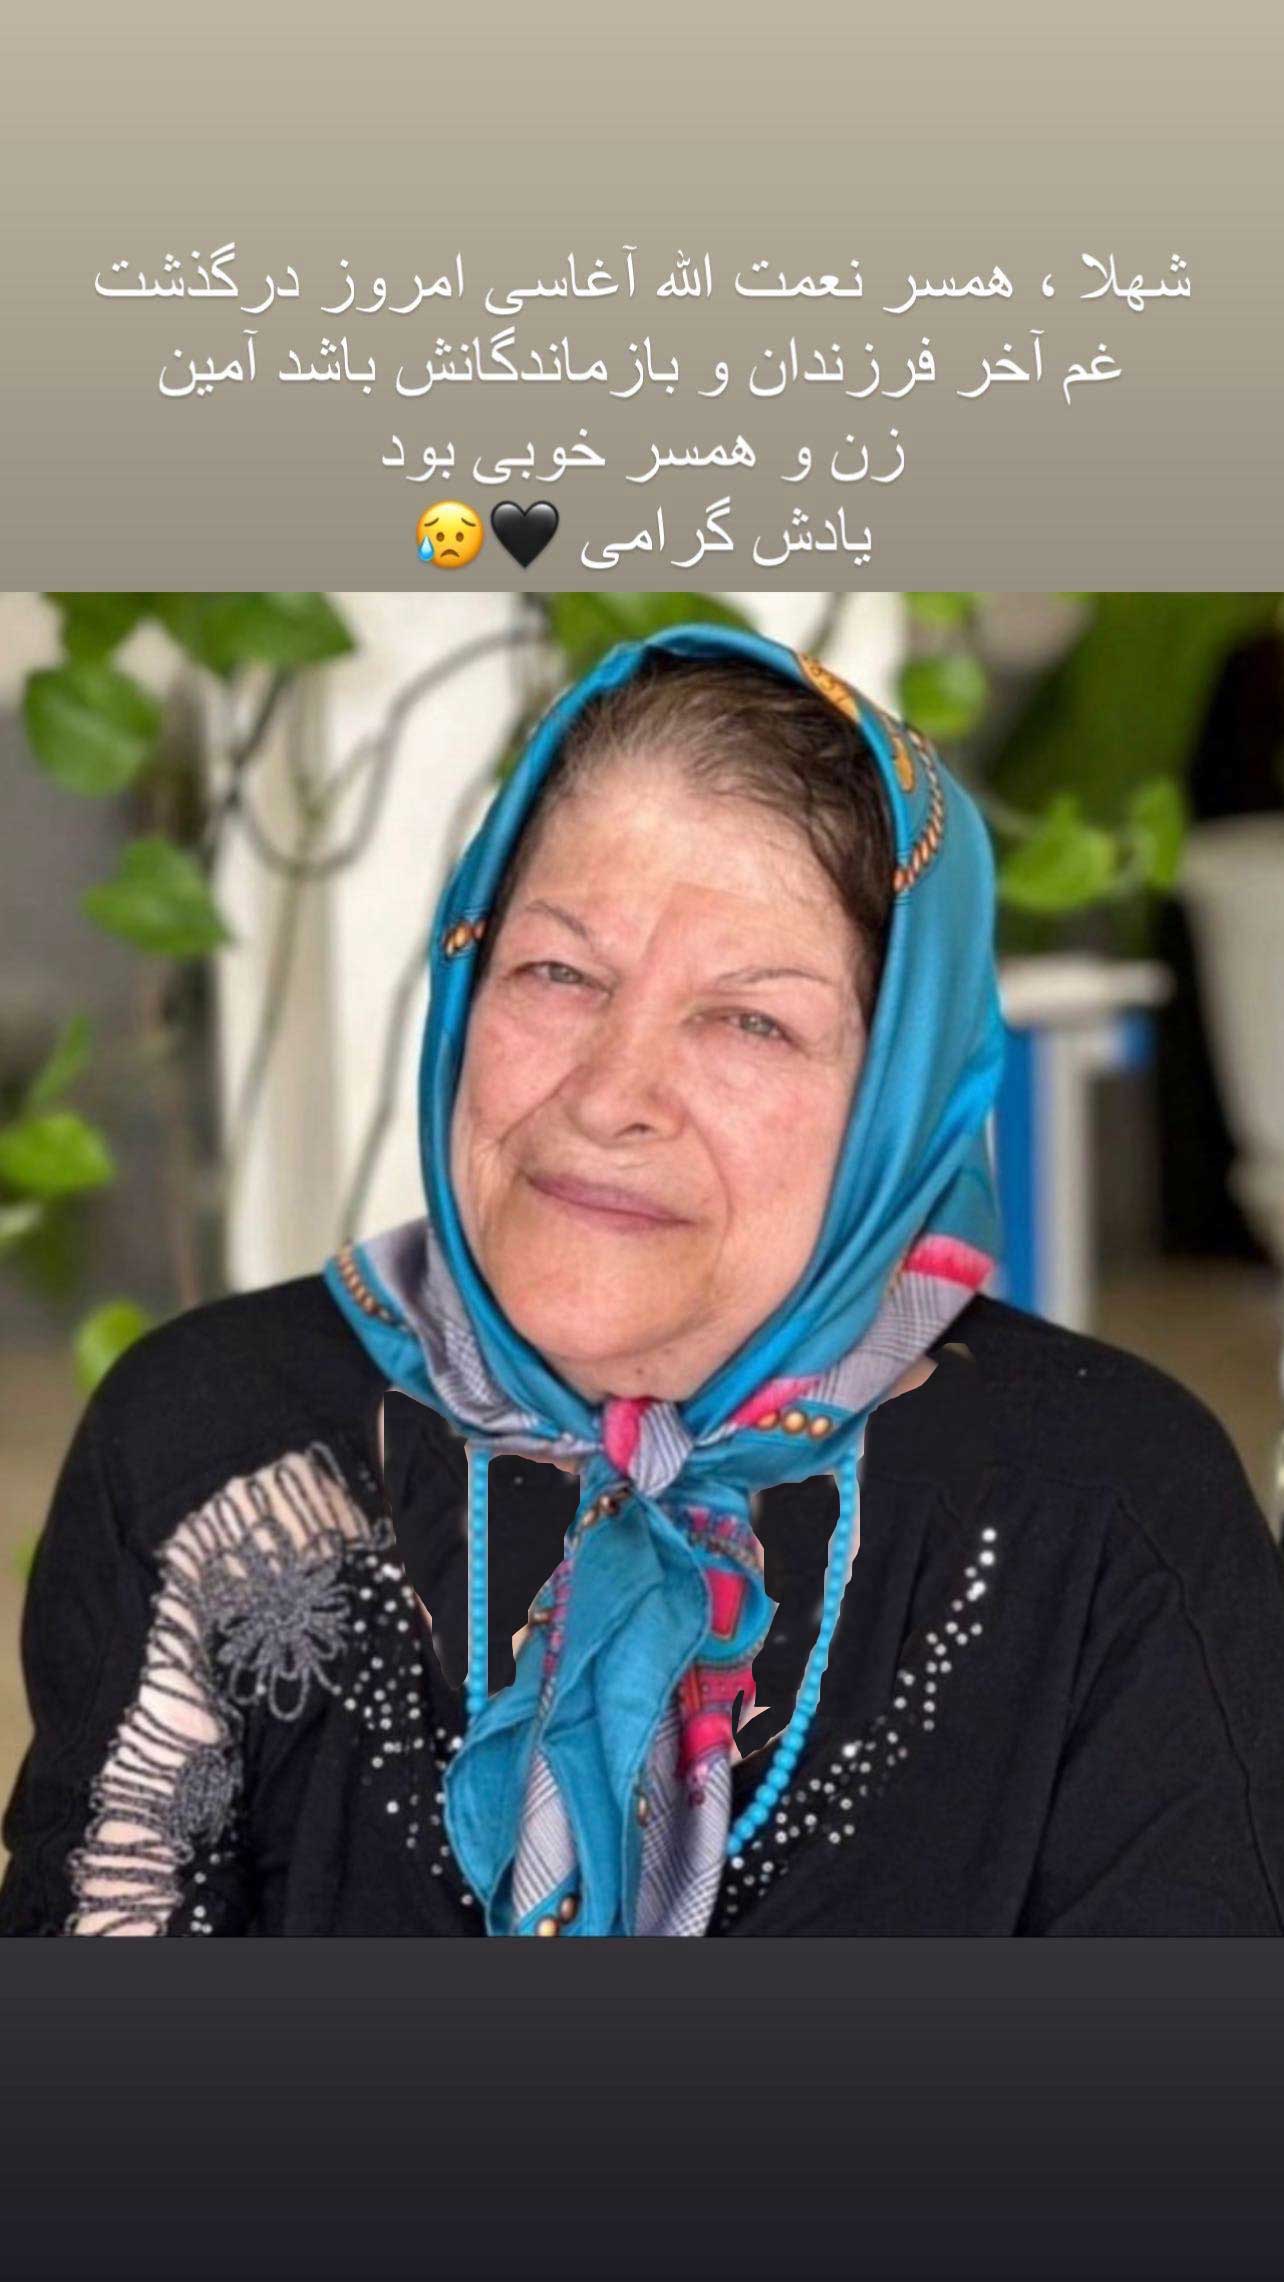 پیام شهناز تهرانی برای فوت همسر خواننده معروف